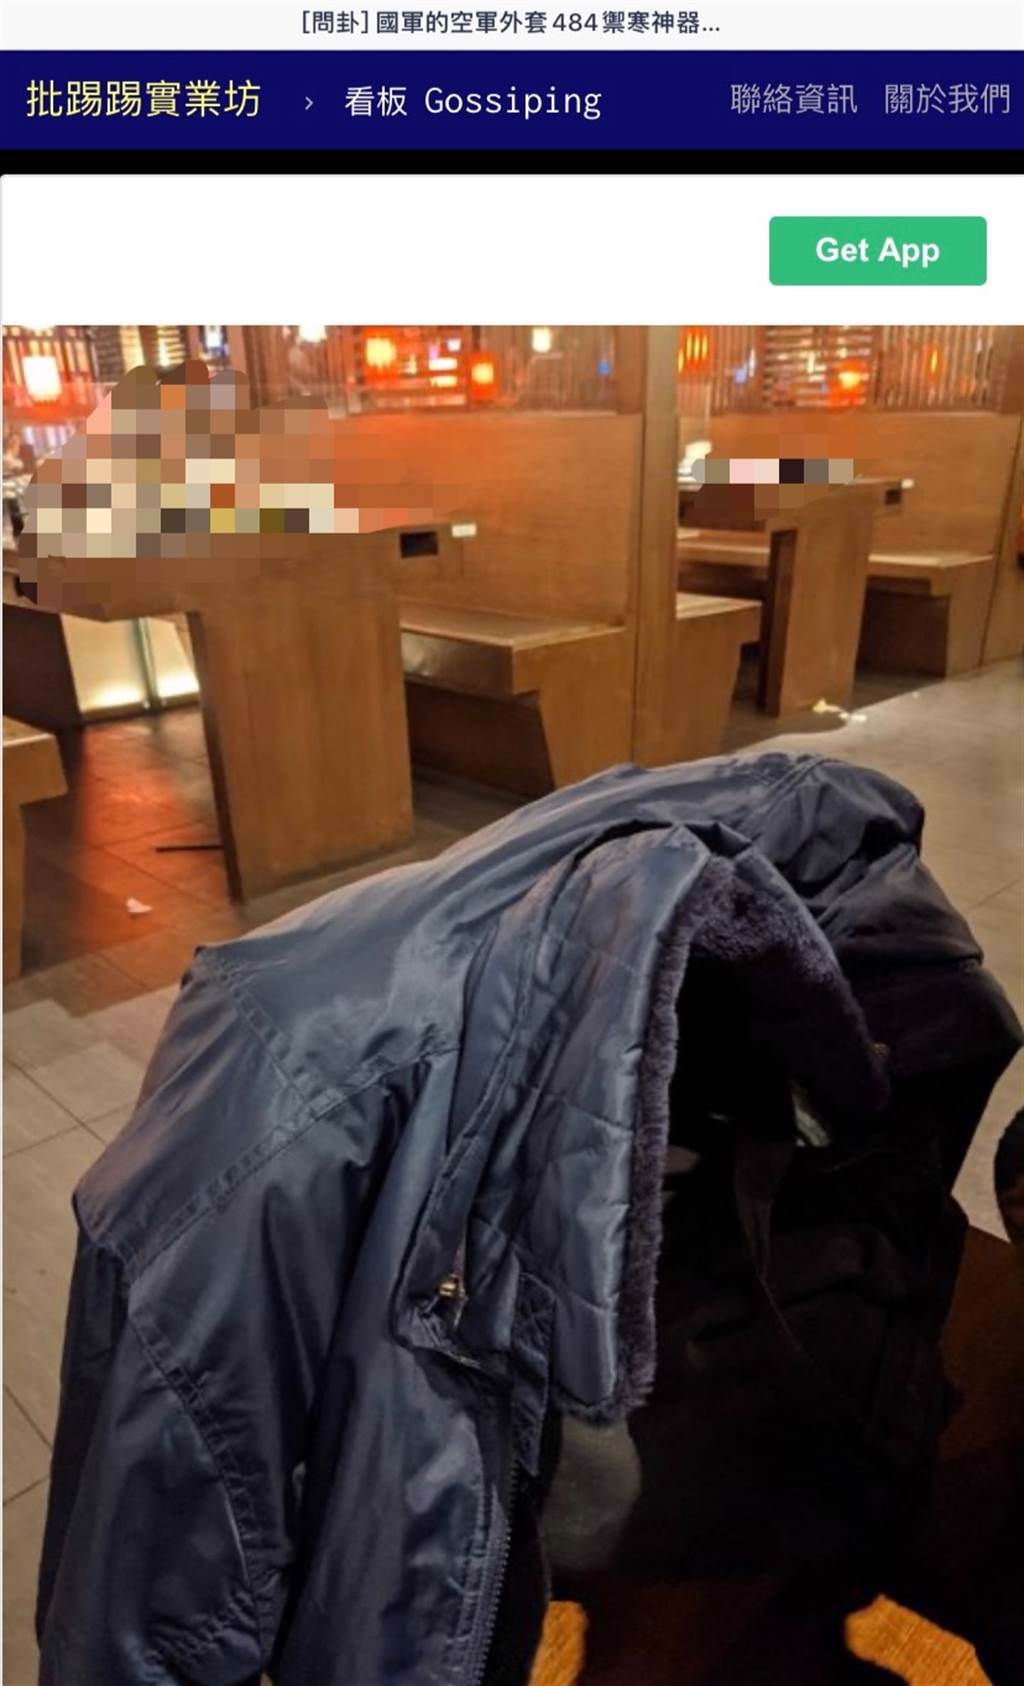 網友分享自己在軍用品店買到的空軍外套，讓他大讚根本是禦寒神器。(圖擷取自ptt)